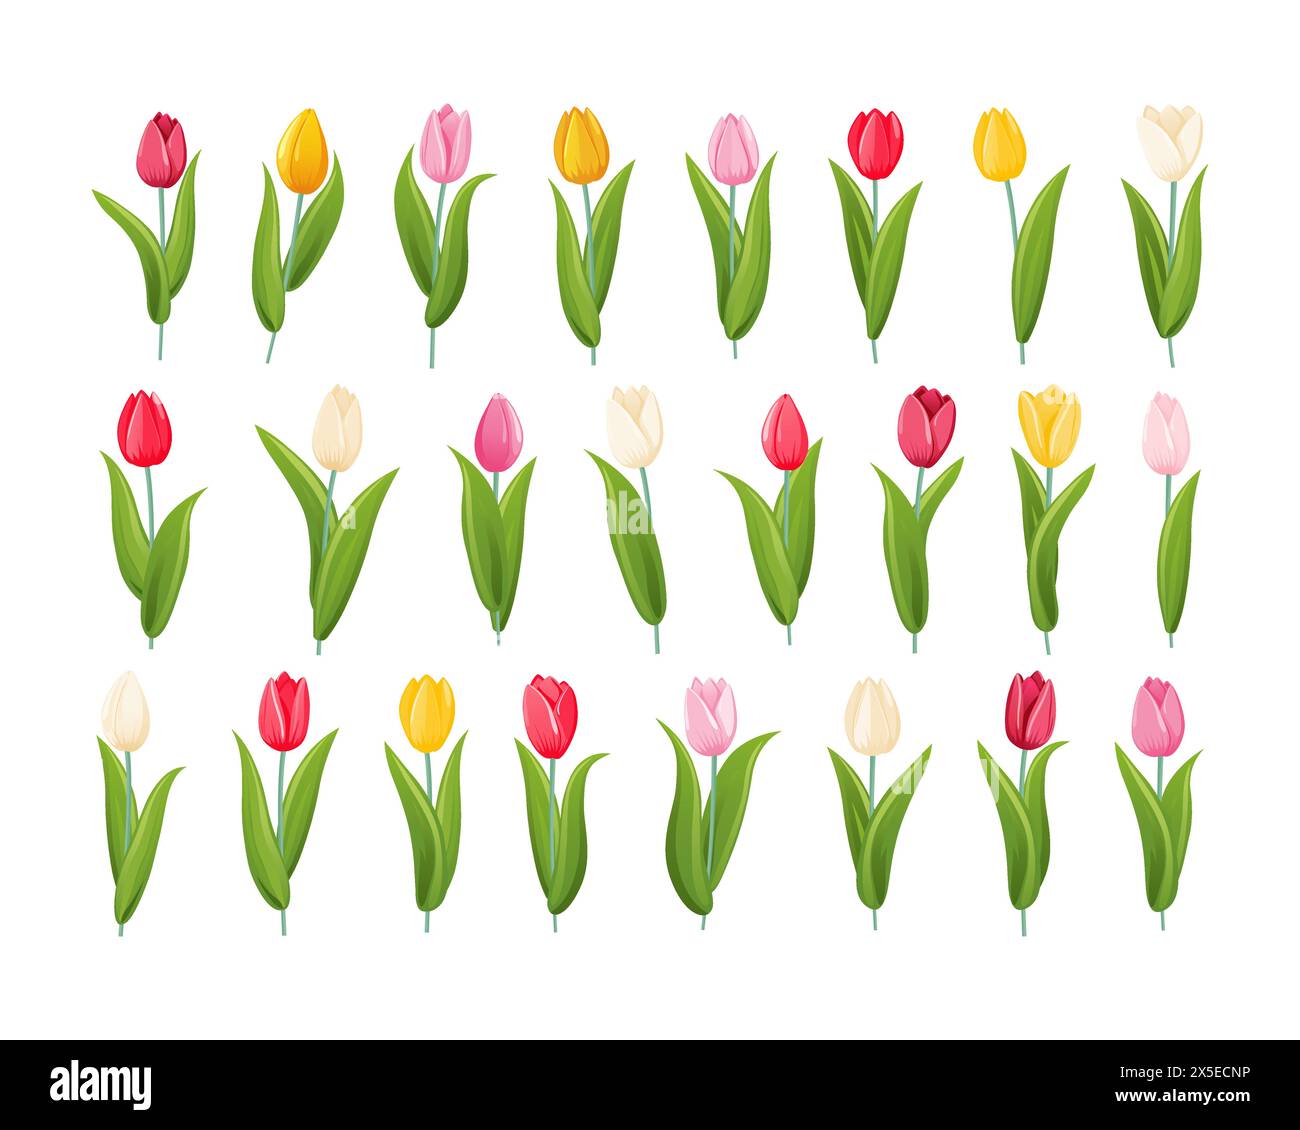 Ein Satz Tulpen in verschiedenen Farben und Formen. Tulpenblüte mit Stiel und Blättern. Eine bauchige Frühlingsblühpflanze aus der Familie der Lilien mit Hell, cu Stock Vektor